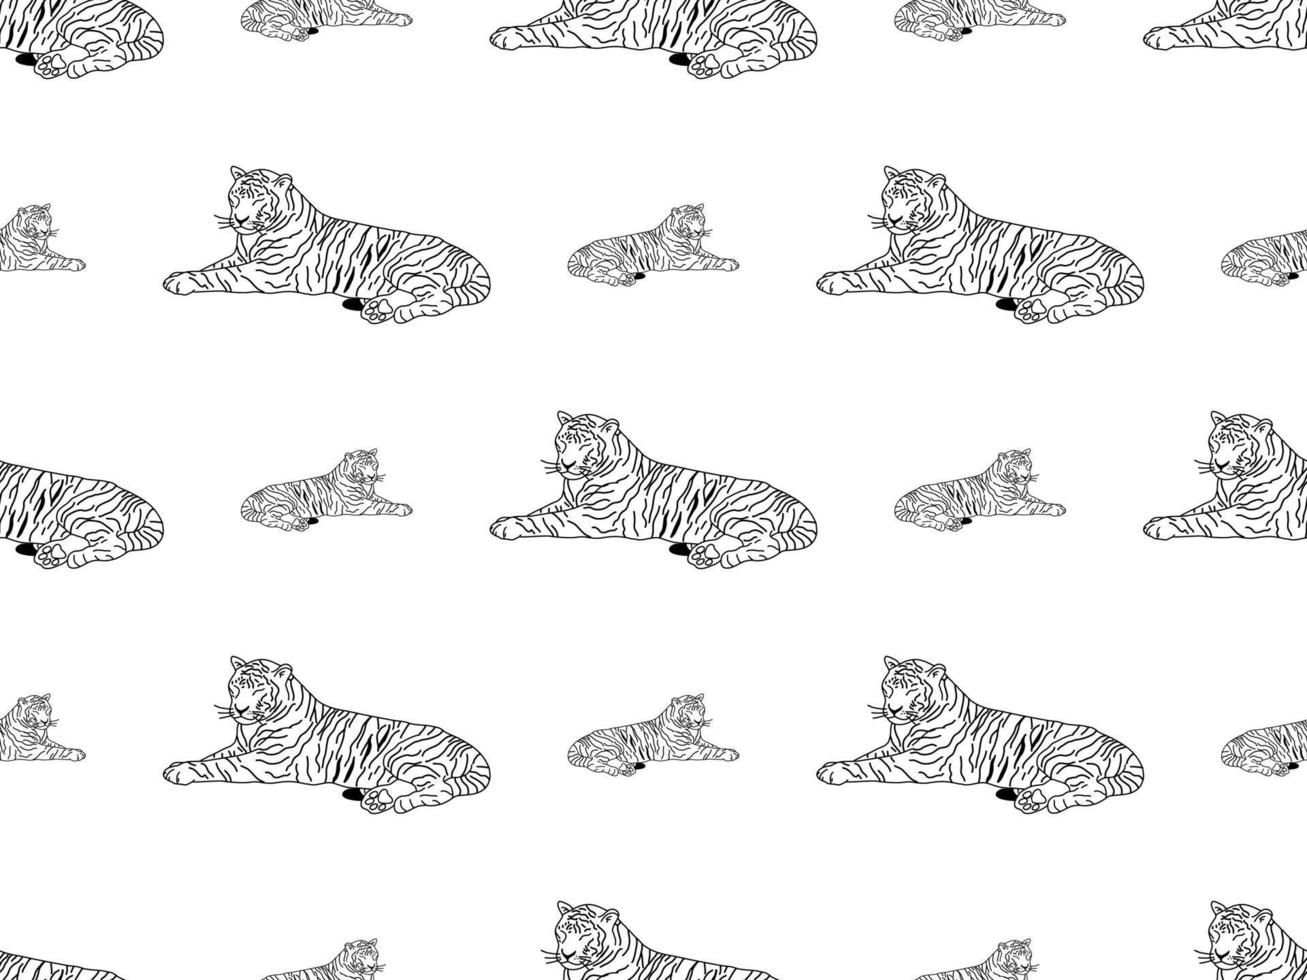 tigre, caricatura, carácter, seamless, patrón, blanco, plano de fondo vector